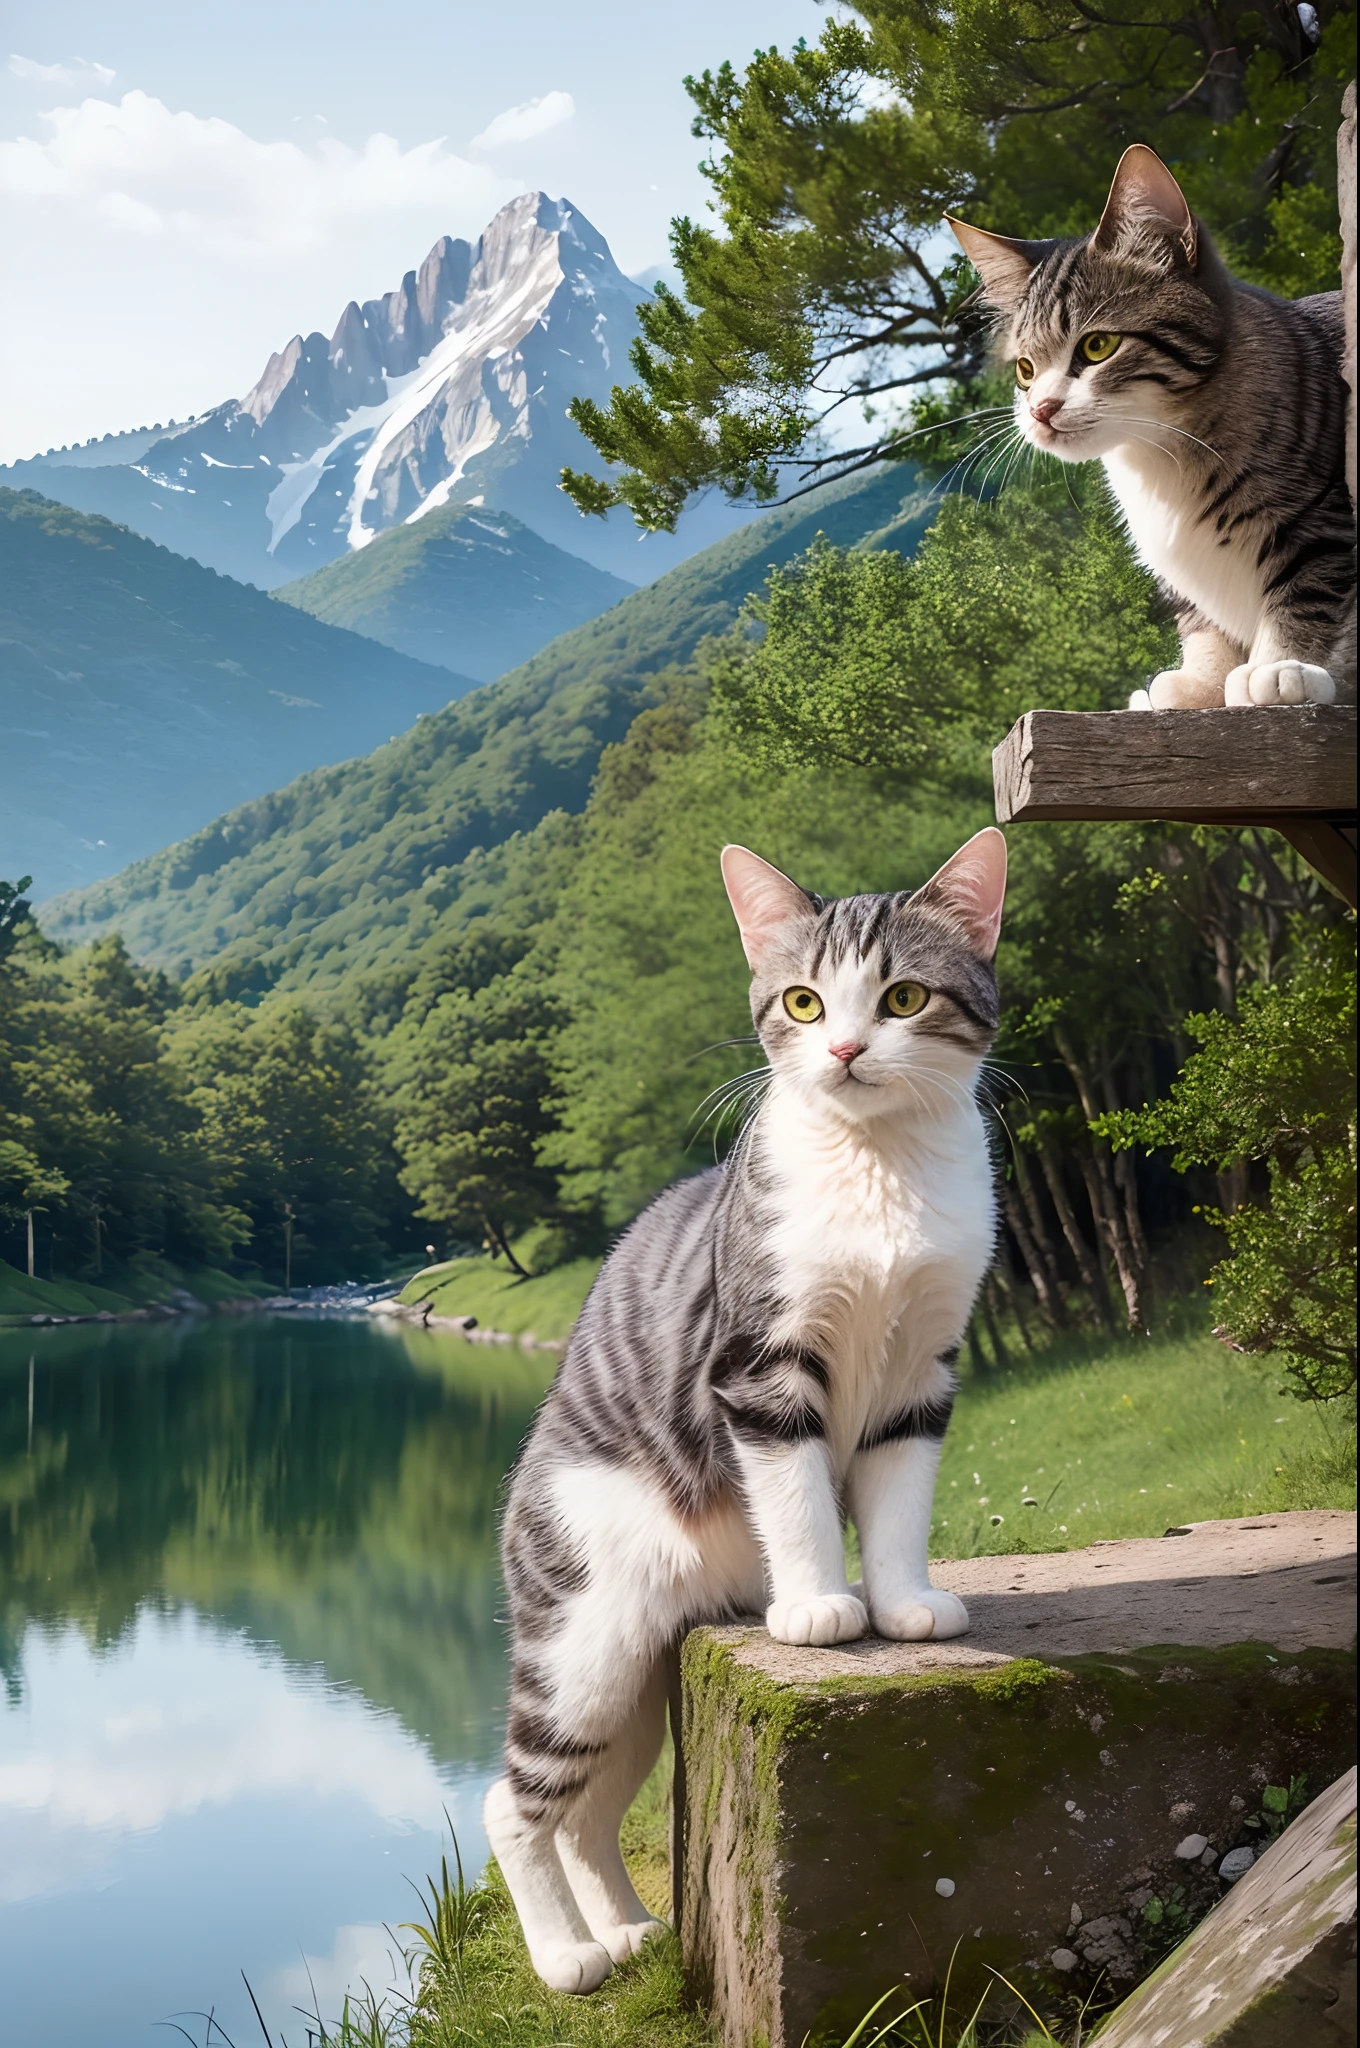 ((顶级品质、杰作、摄影写实主义:1.4、8K))、后面是卡图恩斯和湖泊)、详细的阴部、娇嫩美丽的猫、美丽的风景